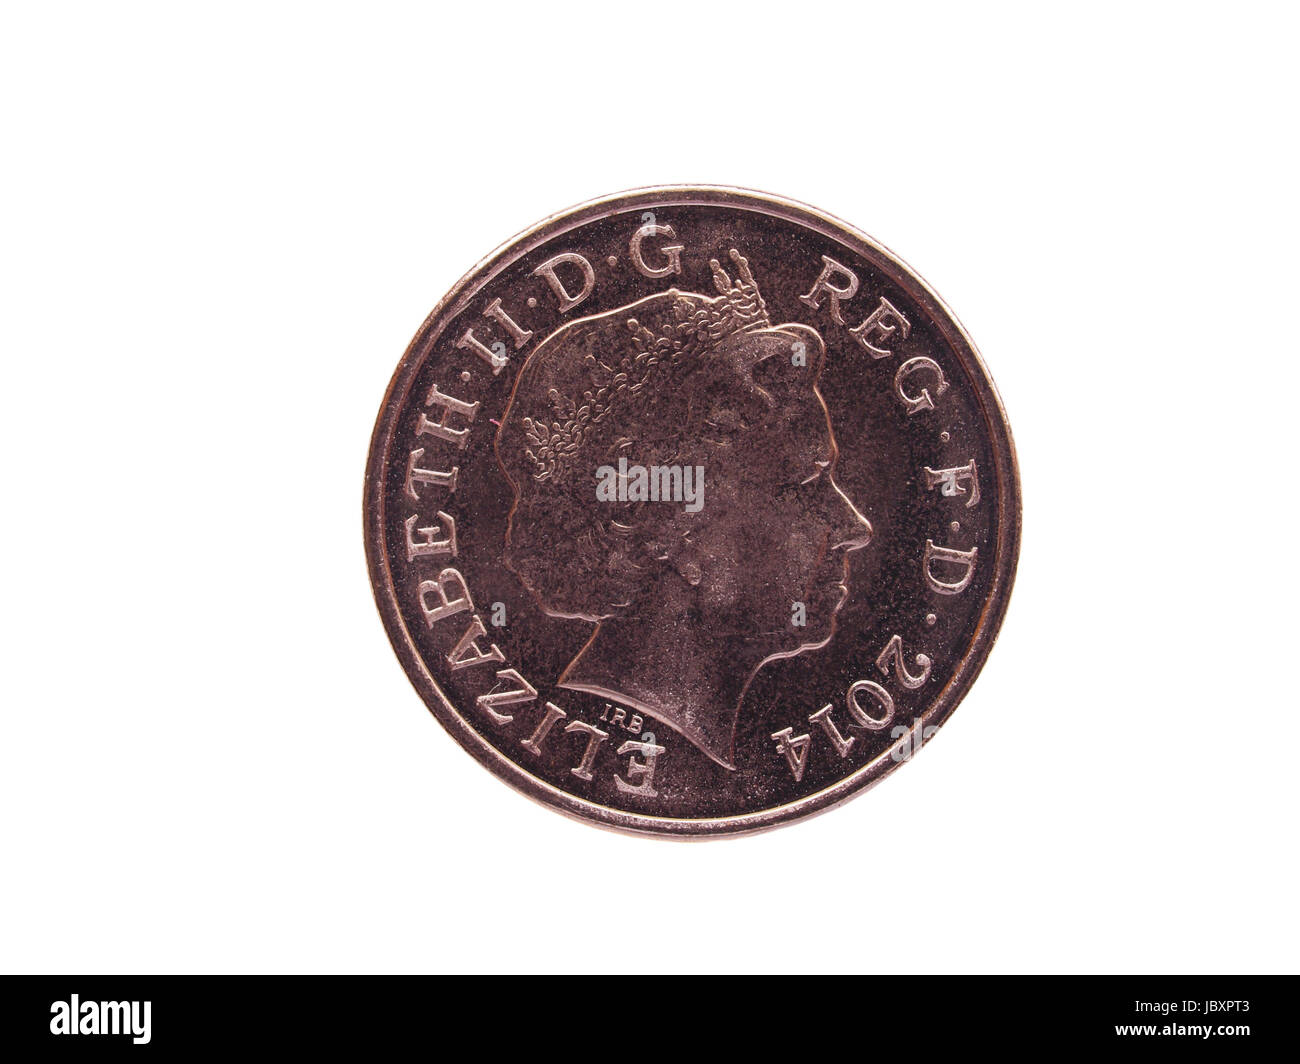 Londres, Royaume-Uni - 28 juin 2014 : Une pièce de Pence Monnaie du Royaume-Uni avec Sa Majesté la Reine Elizabeth II Banque D'Images